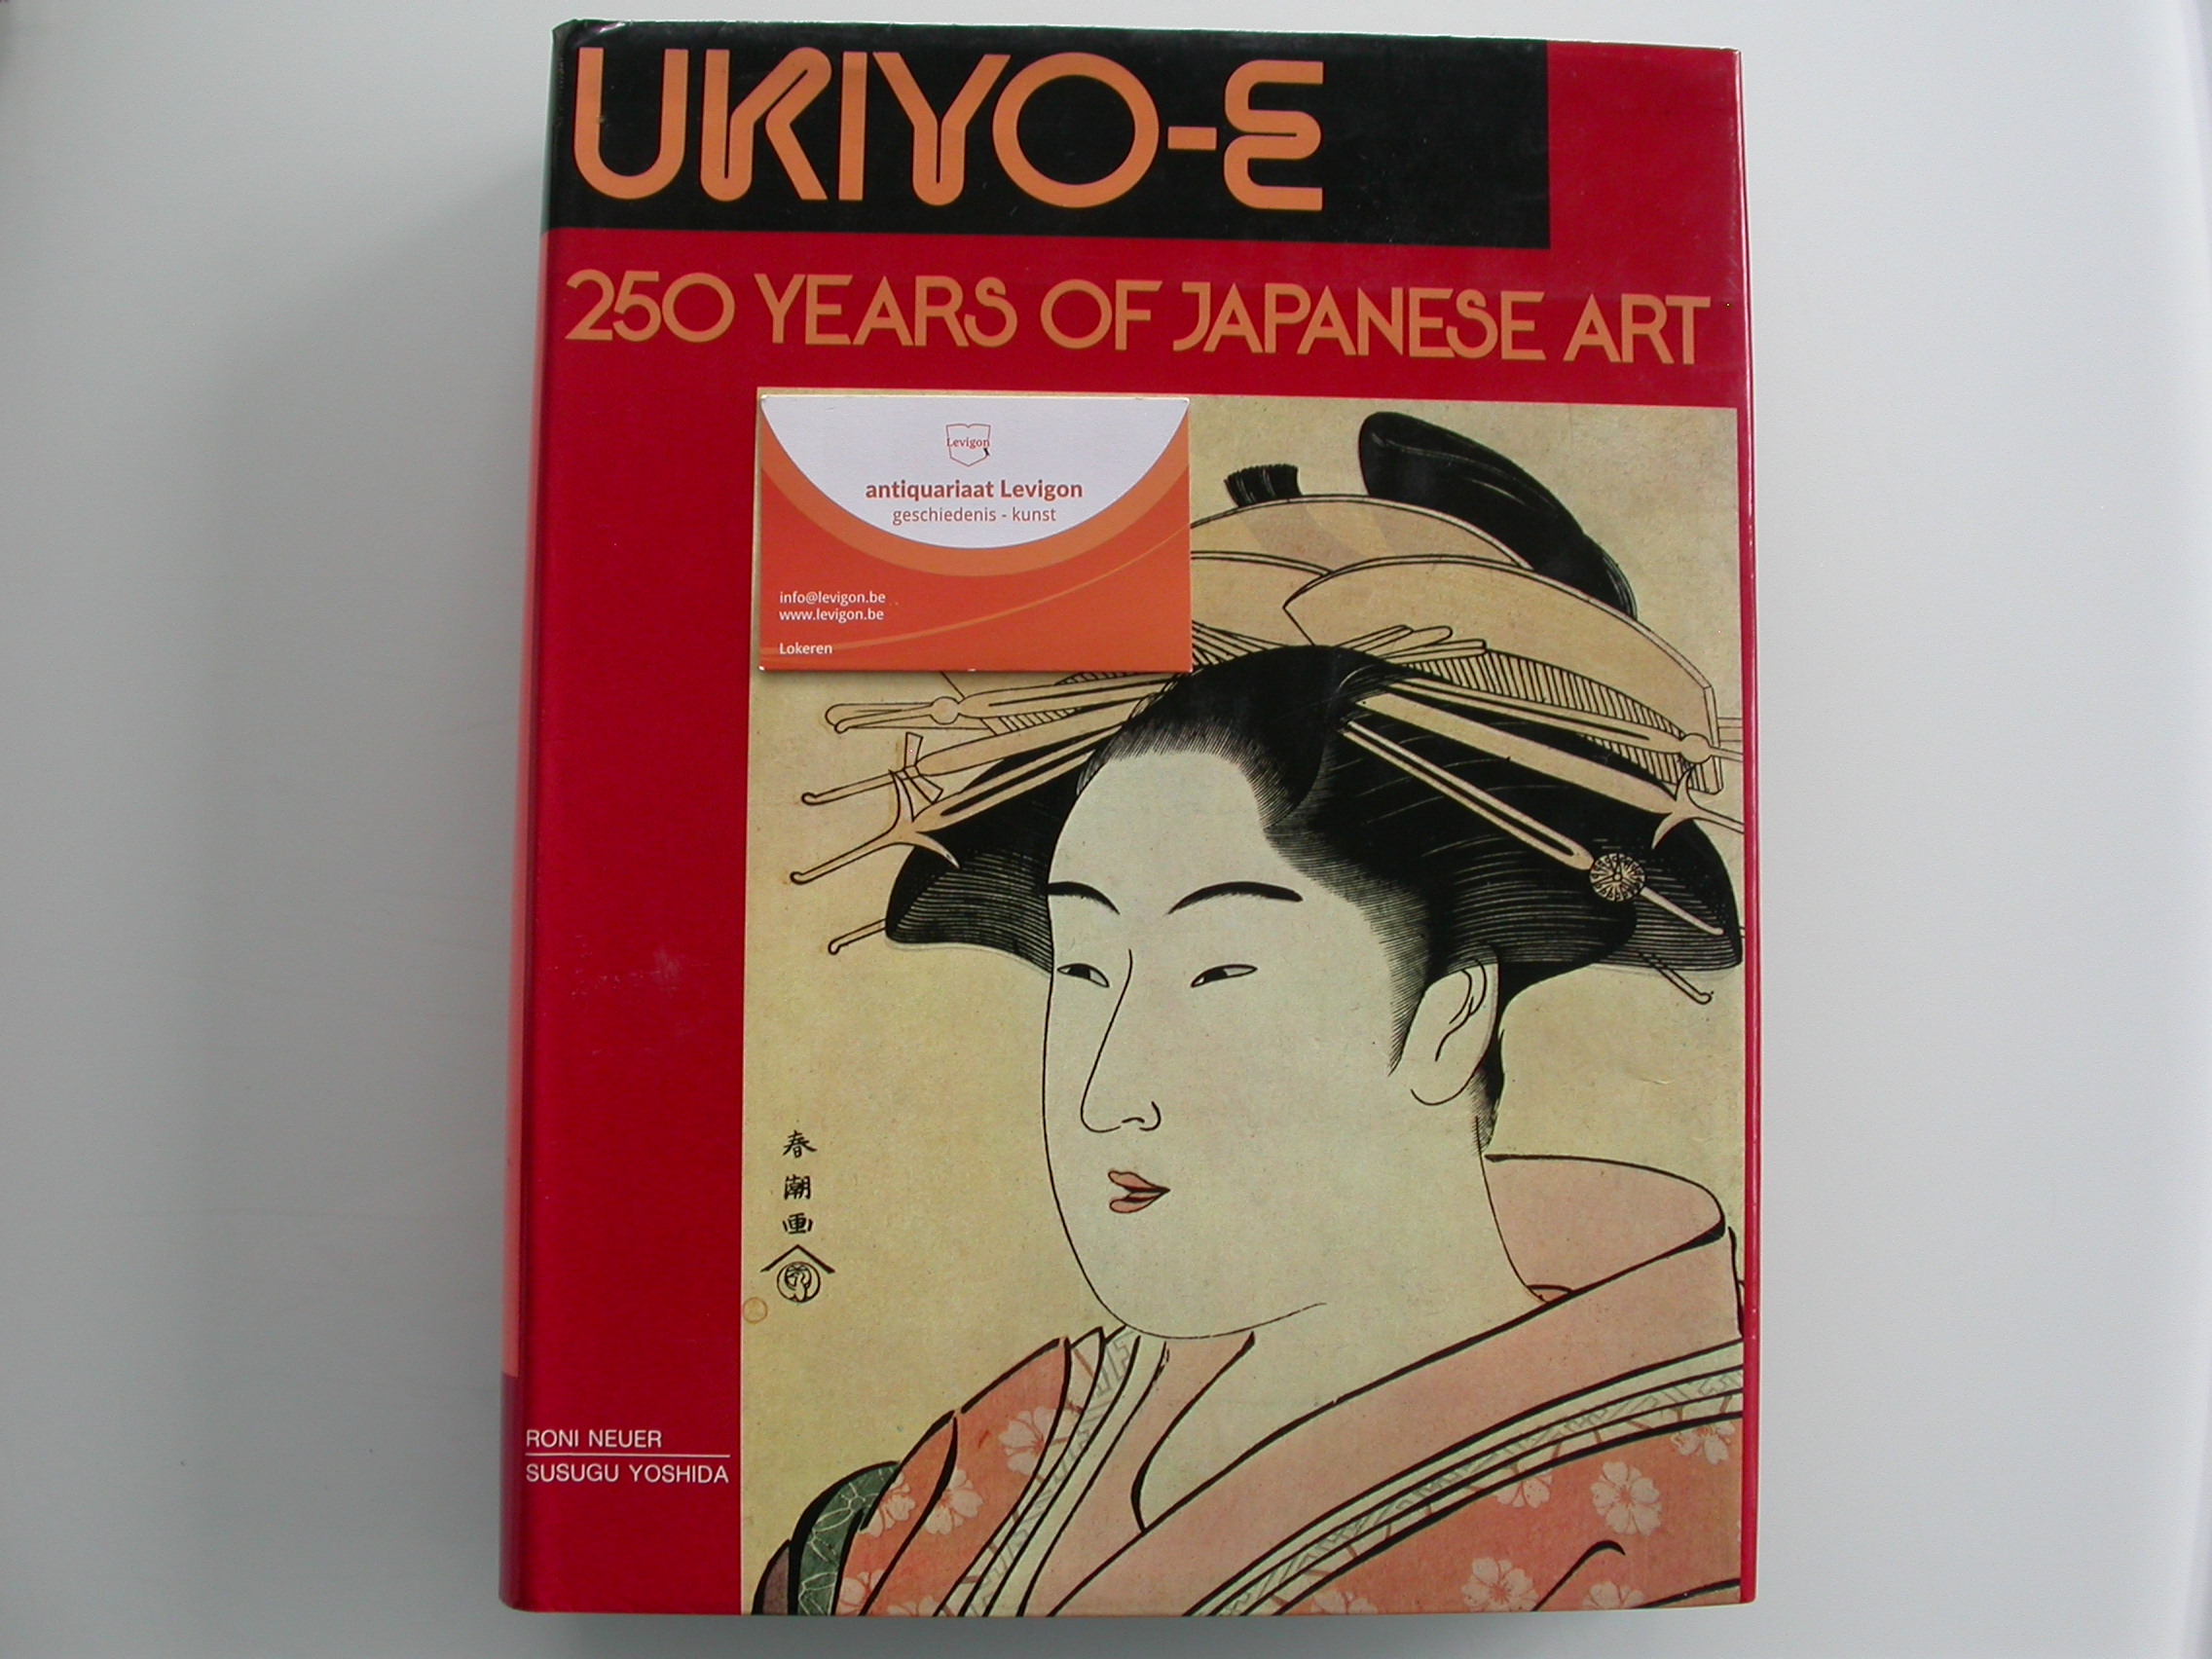 Neuer & Yoshida Ukiyo-e 250 years of Japanese art